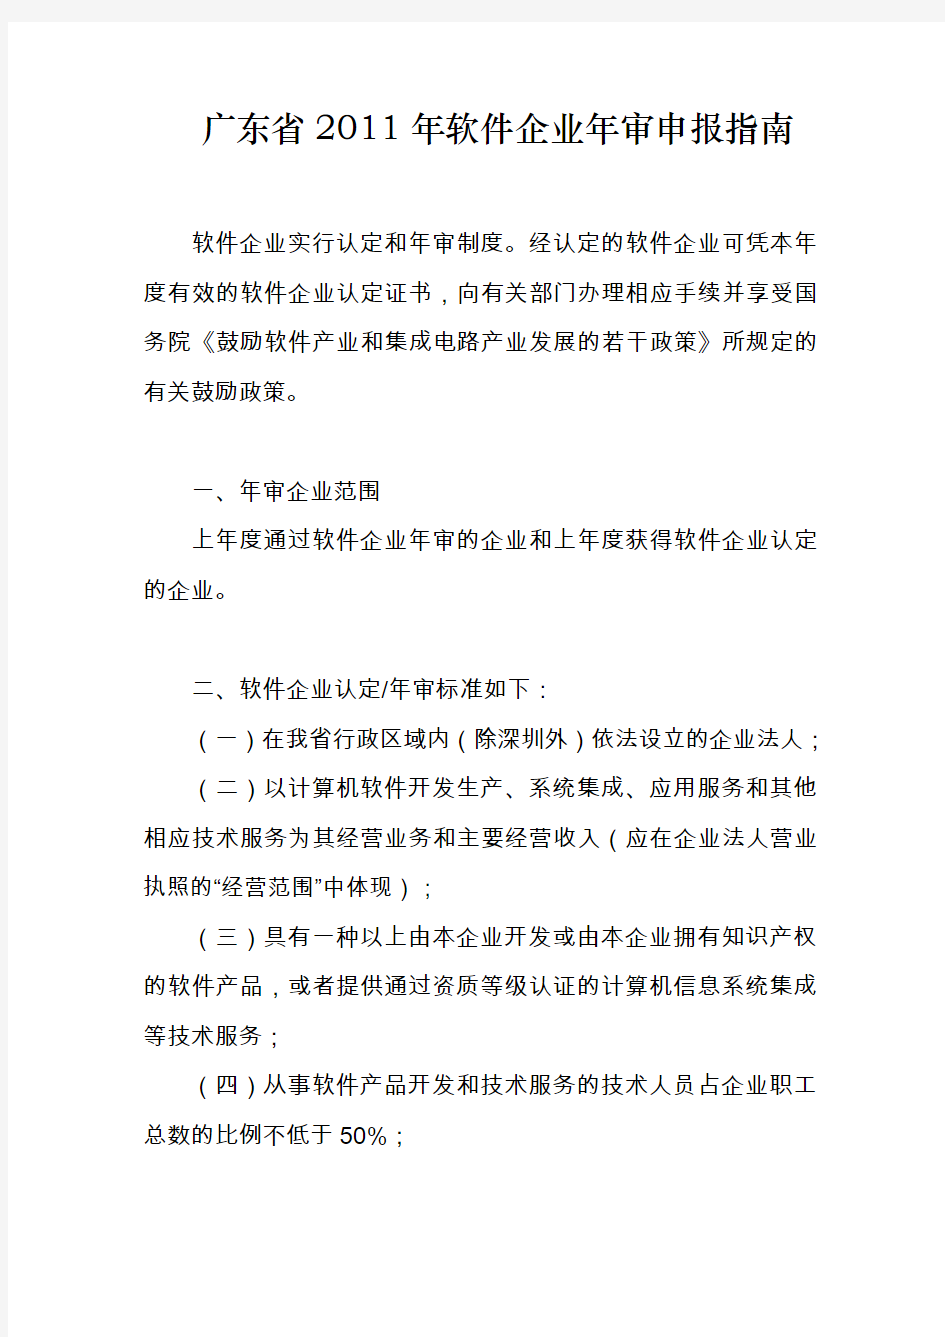 广东省软件企业年审申报指南 - 惠州市软件行业协会